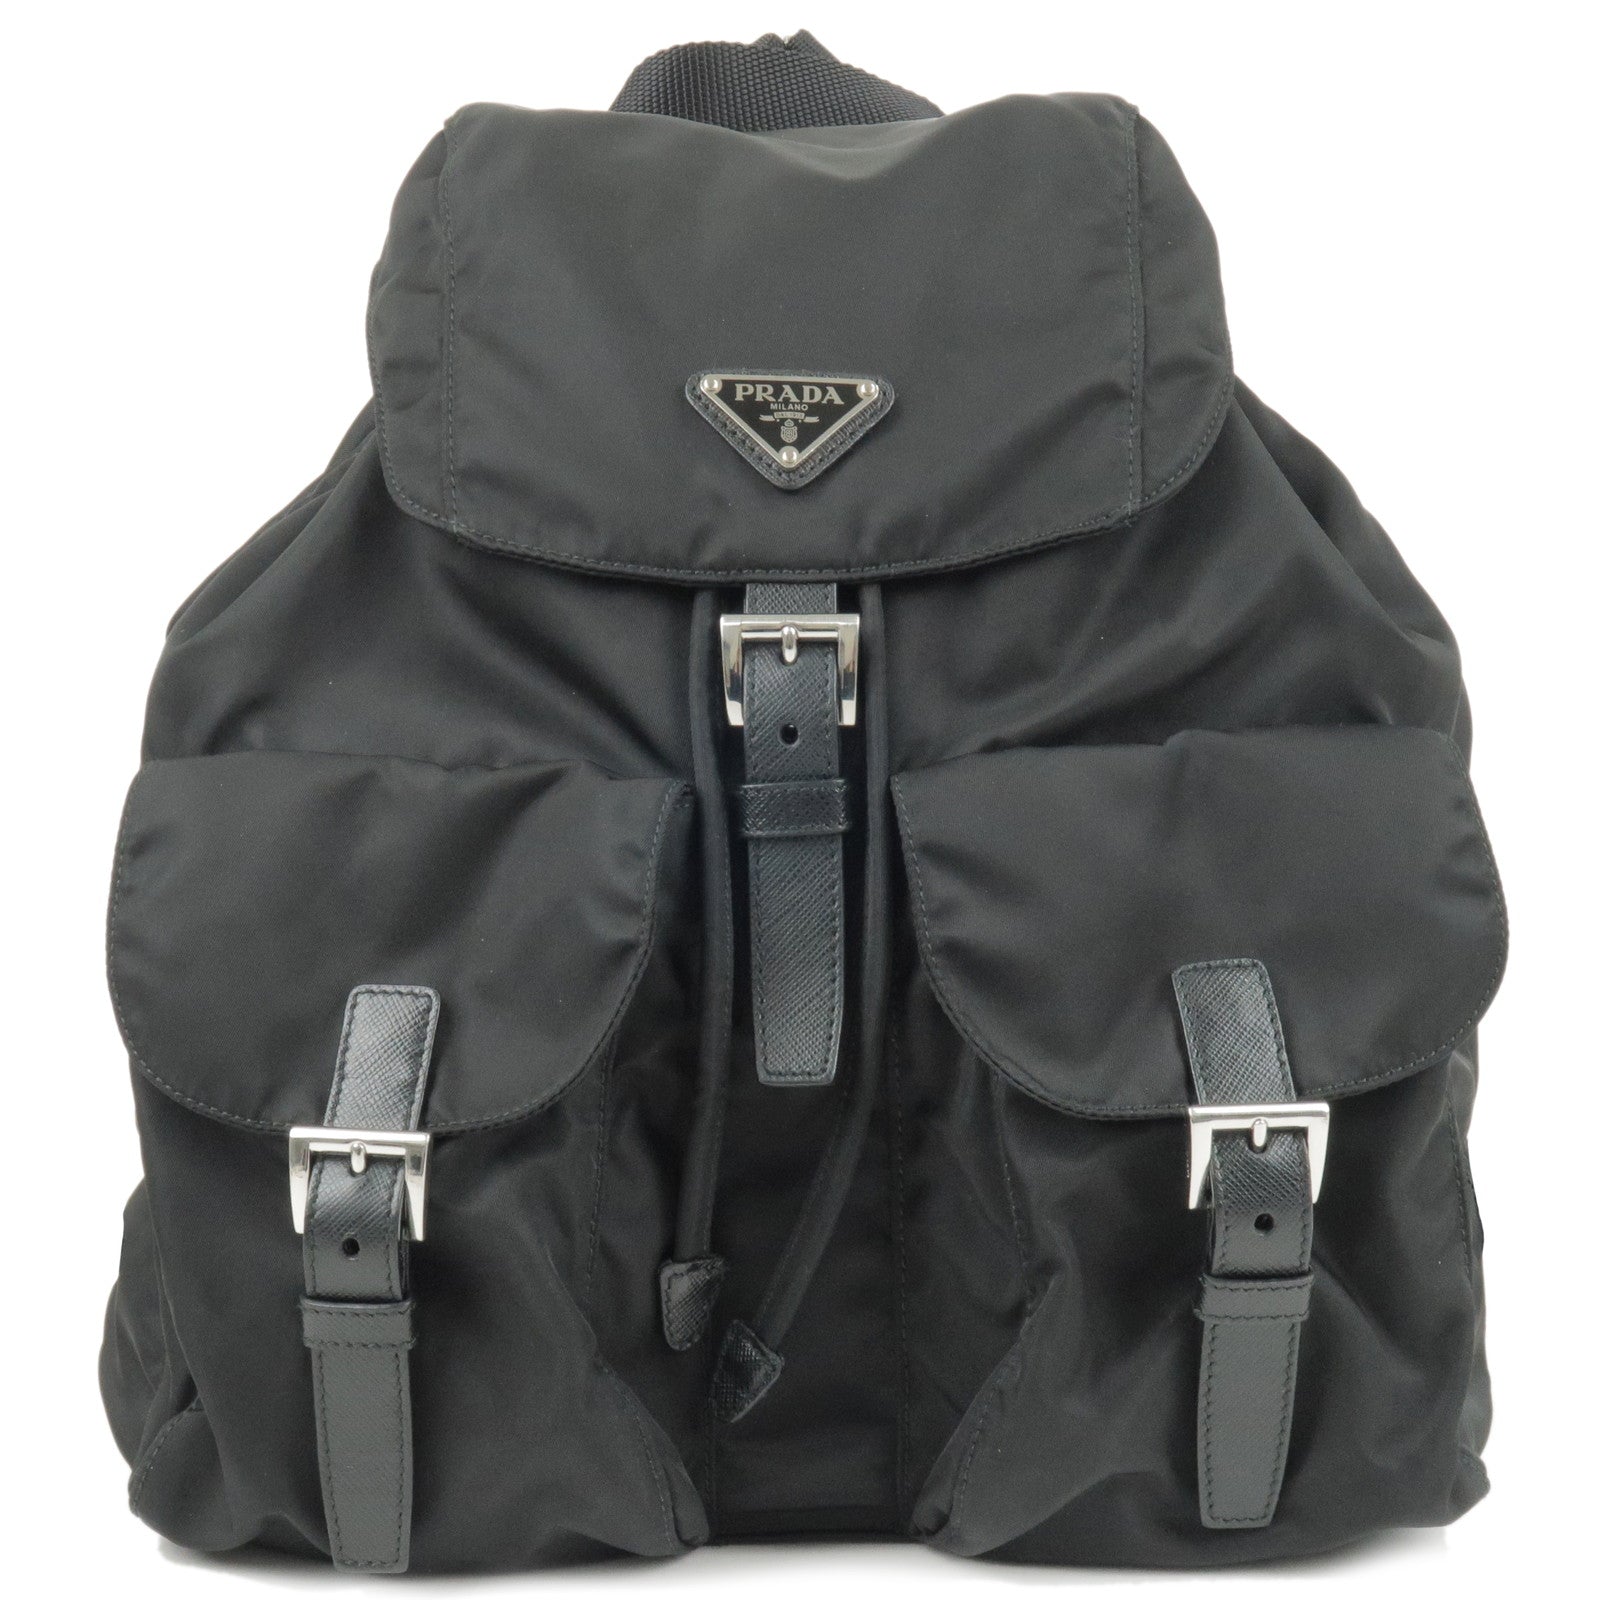 PRADA-Logo-Nylon-Leather-Back-Pack-Ruck-Sack-Black-1BZ811